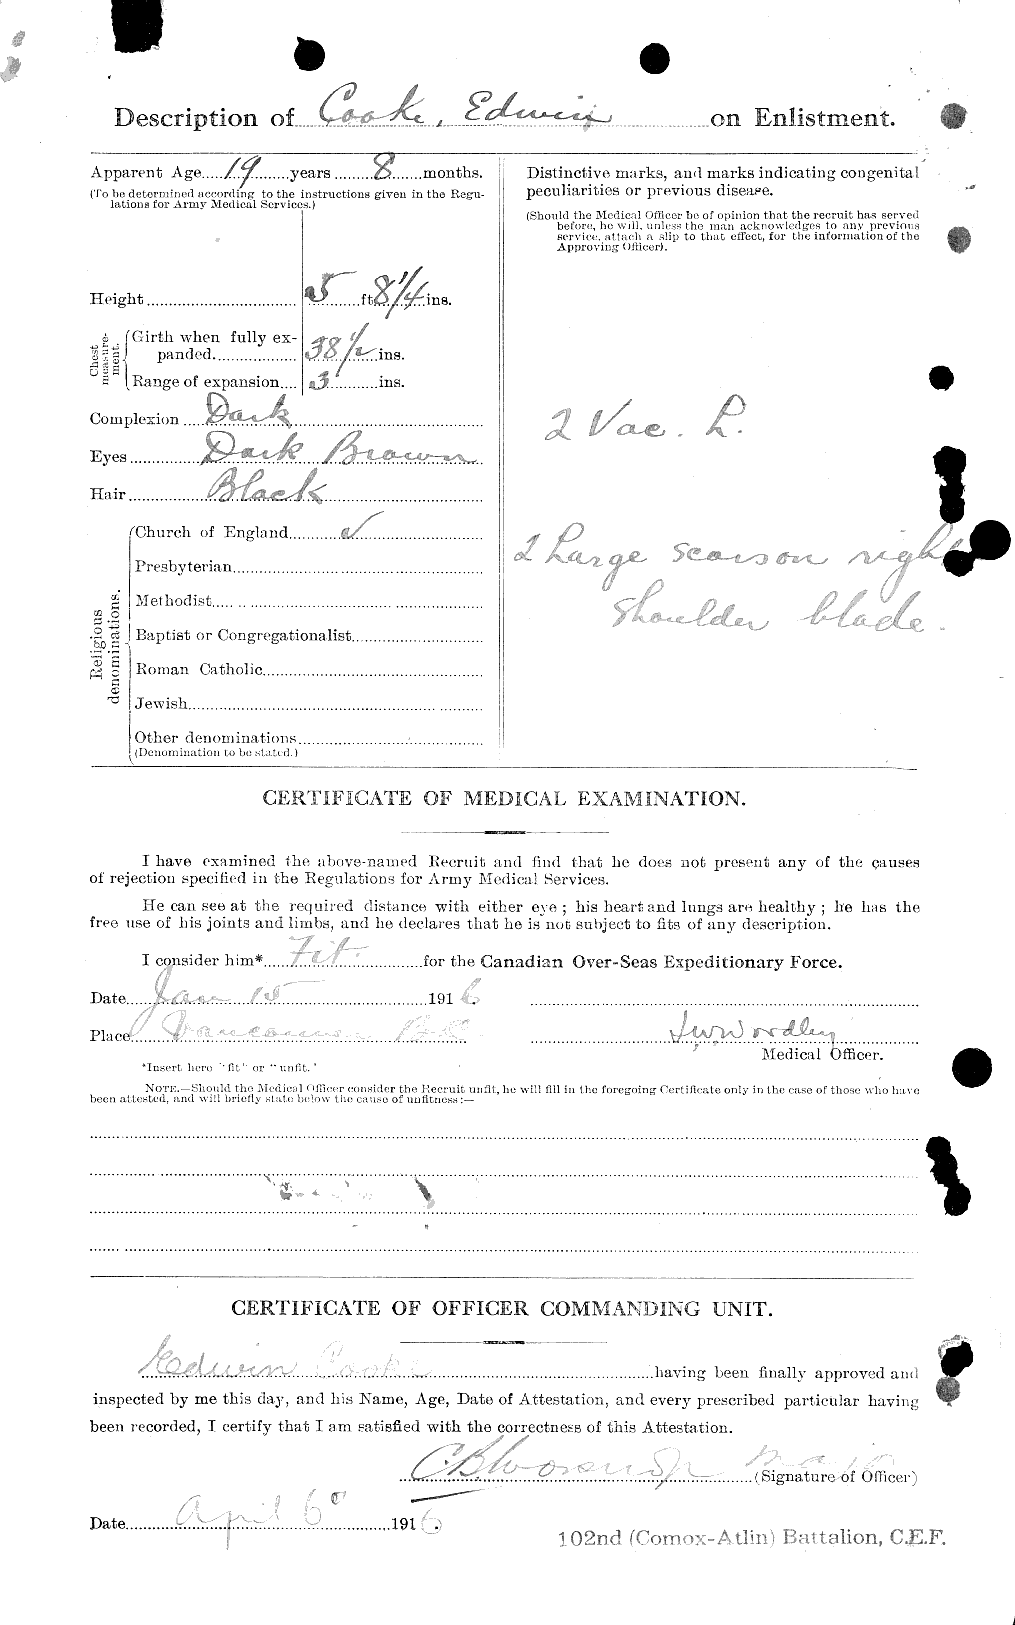 Dossiers du Personnel de la Première Guerre mondiale - CEC 041286b